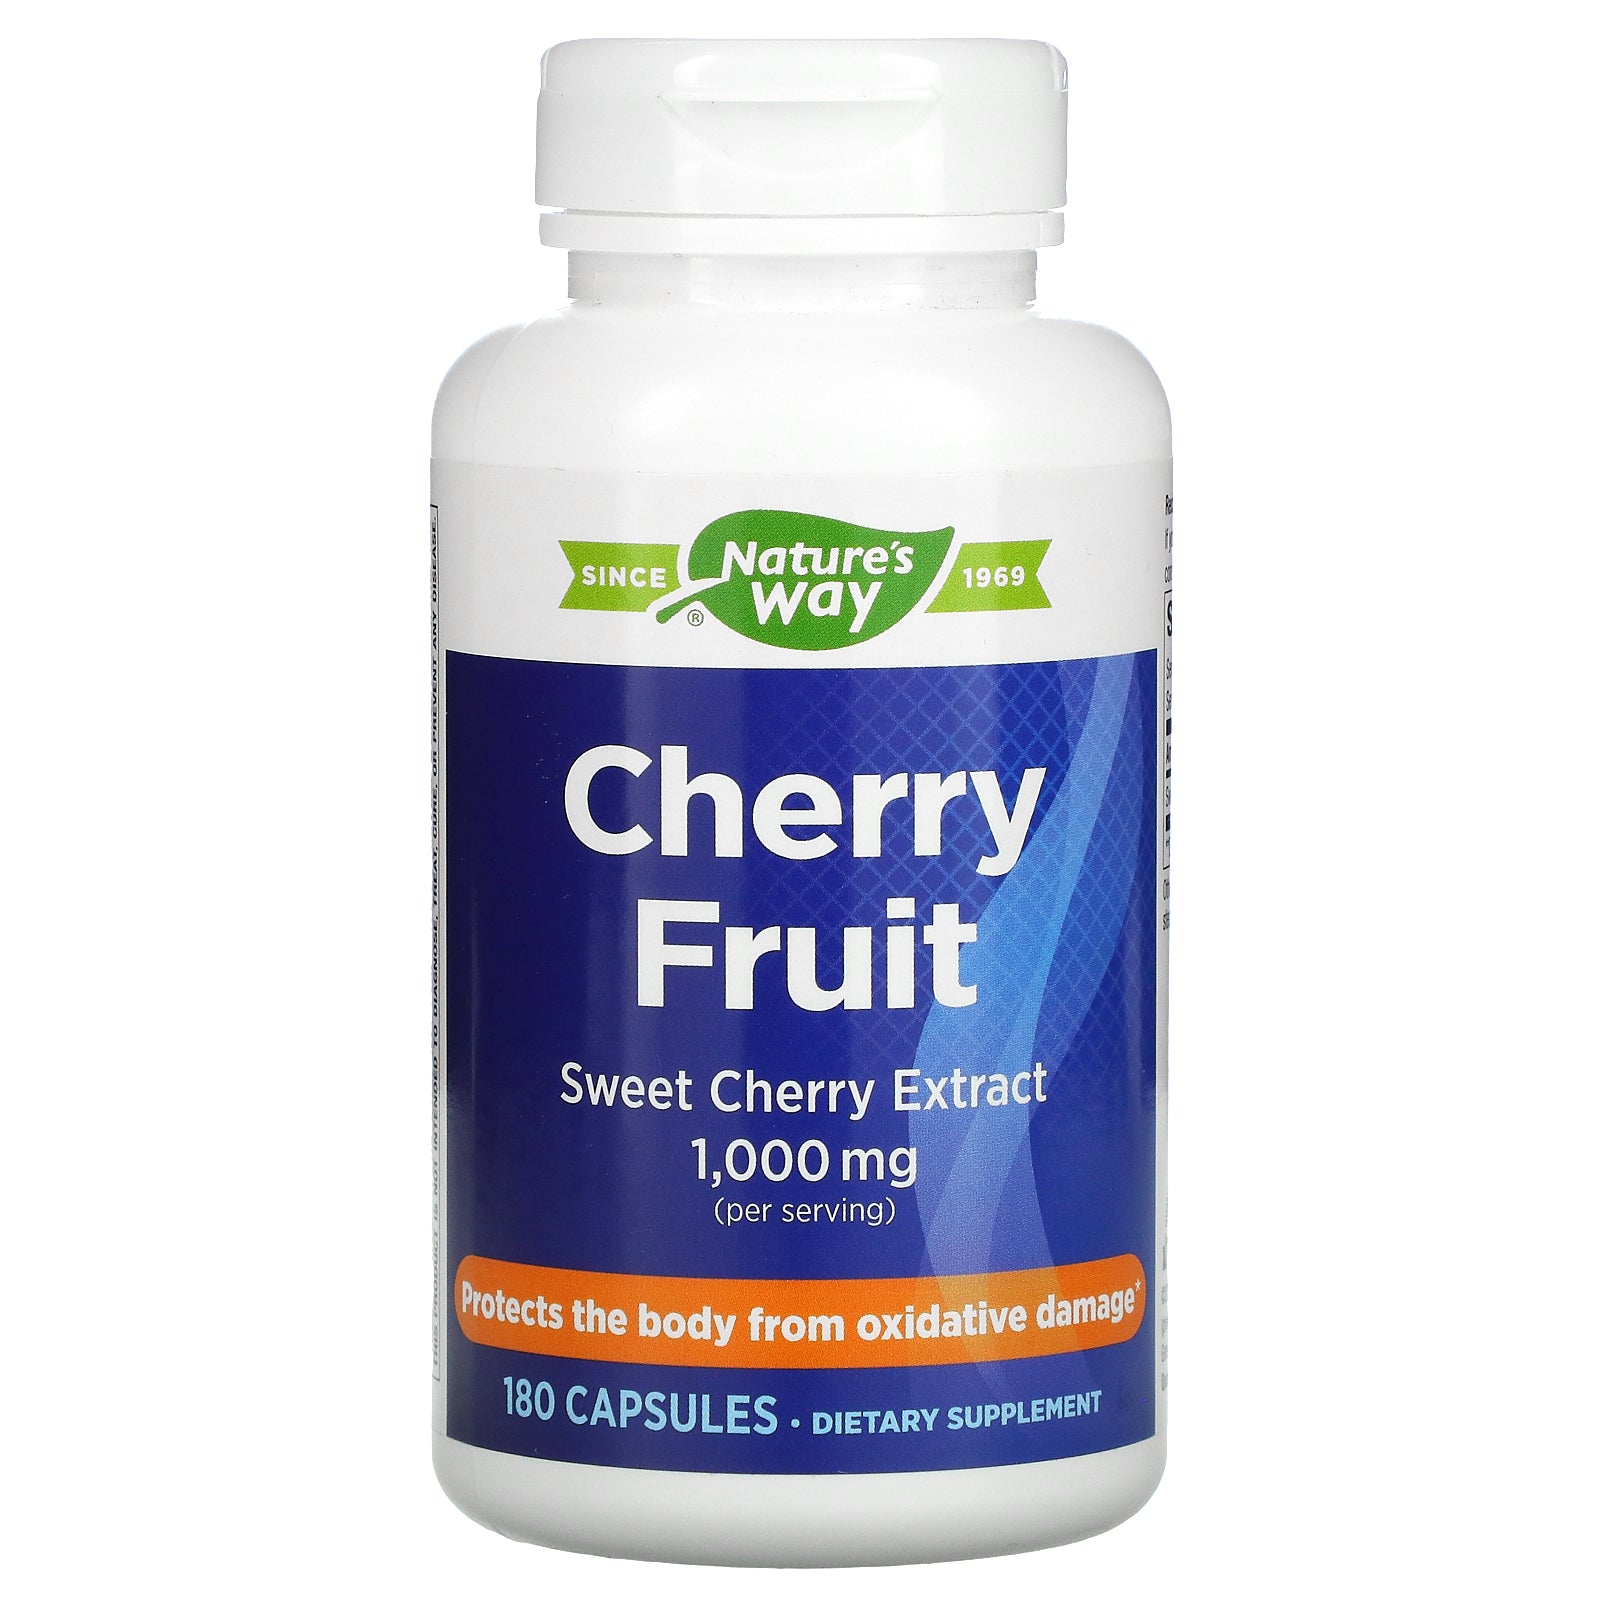 Nature's Way, Cherry Fruit, Sweet Cherry Extract, 500 mg Capsules